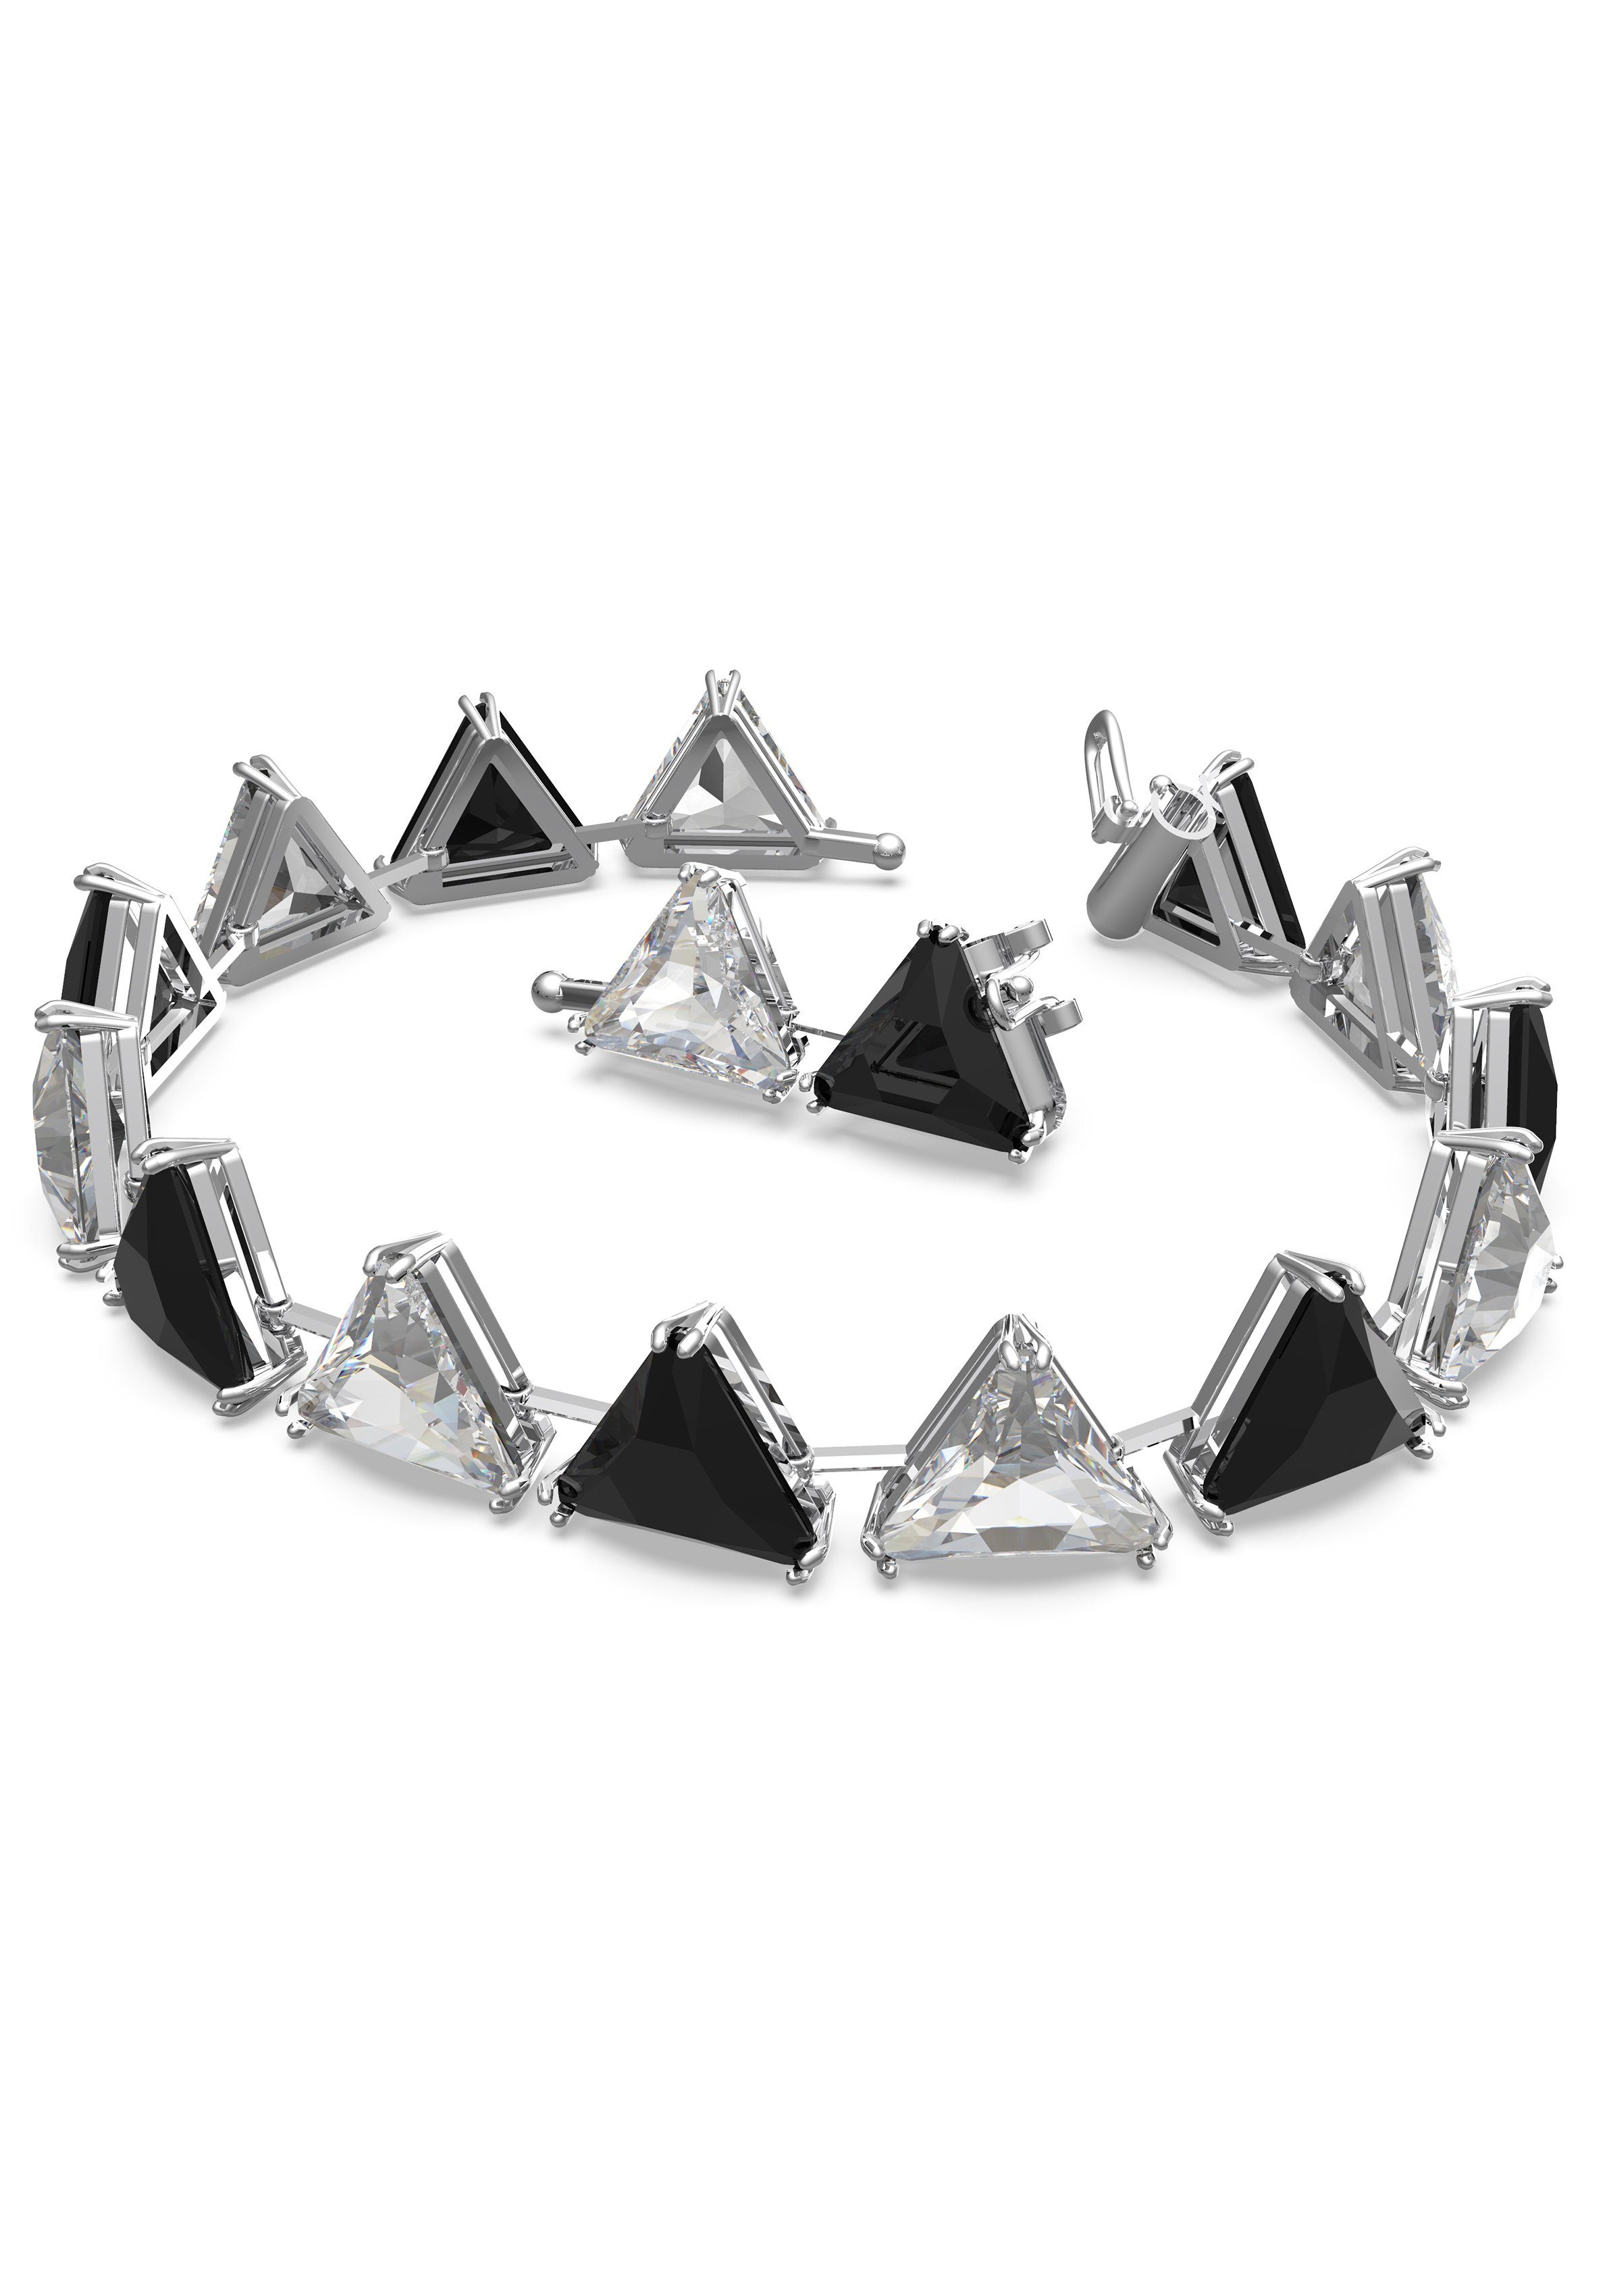 Swarovski Armband Ortyx, Kristalle im Kristall mit 5614934, Dreiecksschliff, 5619154, metallfarben-schwarz-kristallweiß Swarovski® 5600864